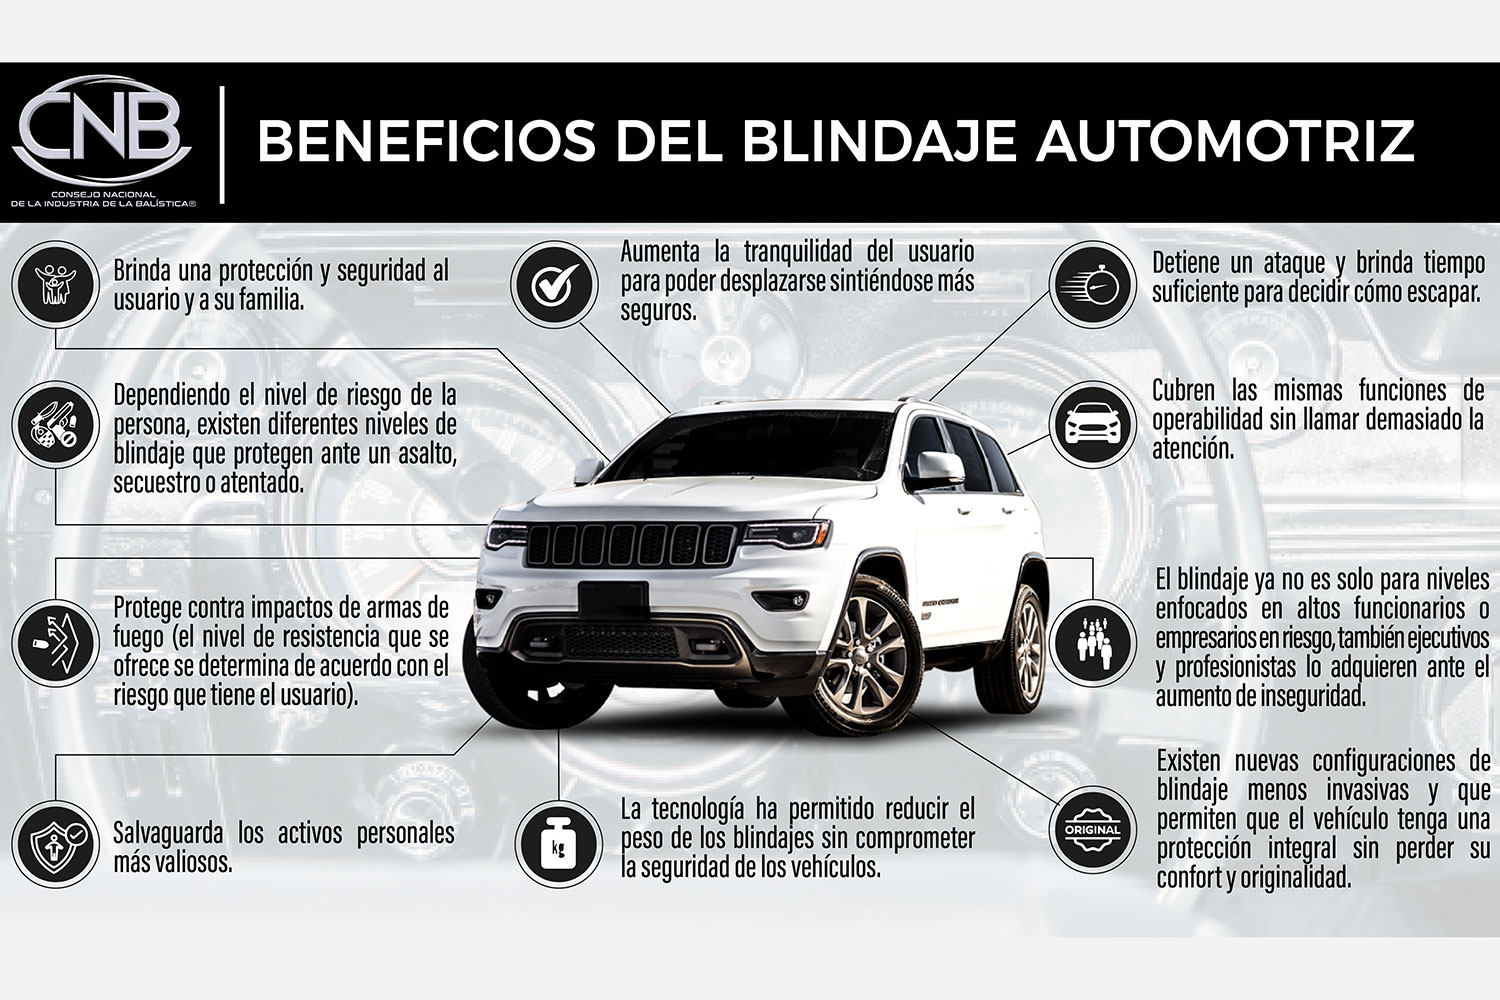 Beneficios del blindaje automotriz según el Consejo Nacional de la Industria de la Balística (CNB) de México